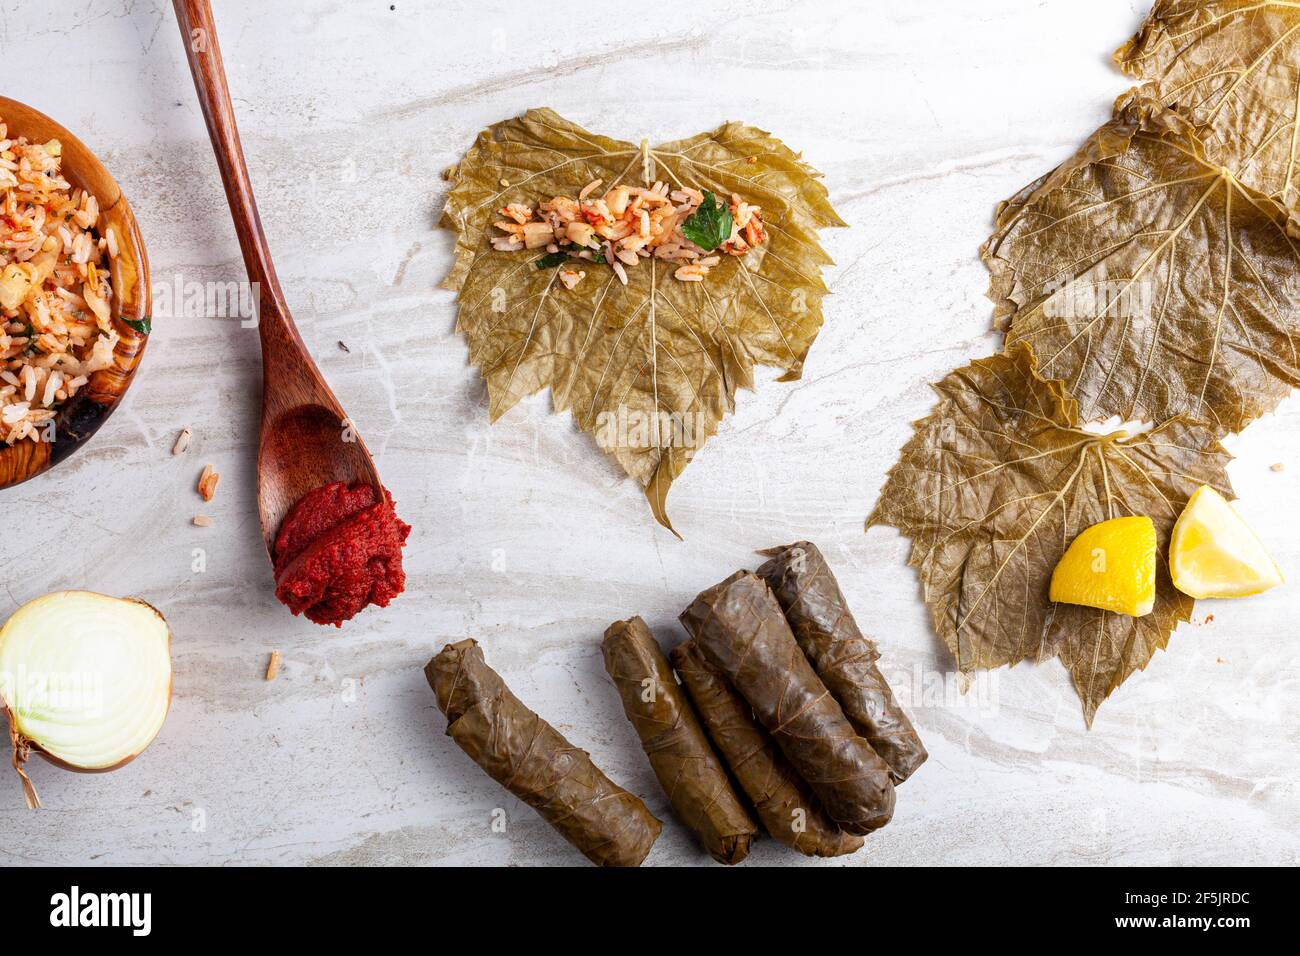 Lo Yaprak sarmasi è un piatto tradizionale turco, fatto da involtini di riso ripieno di foglie d'uva. Immagine piatta che mostra gli ingredienti durante la preparazione Foto Stock